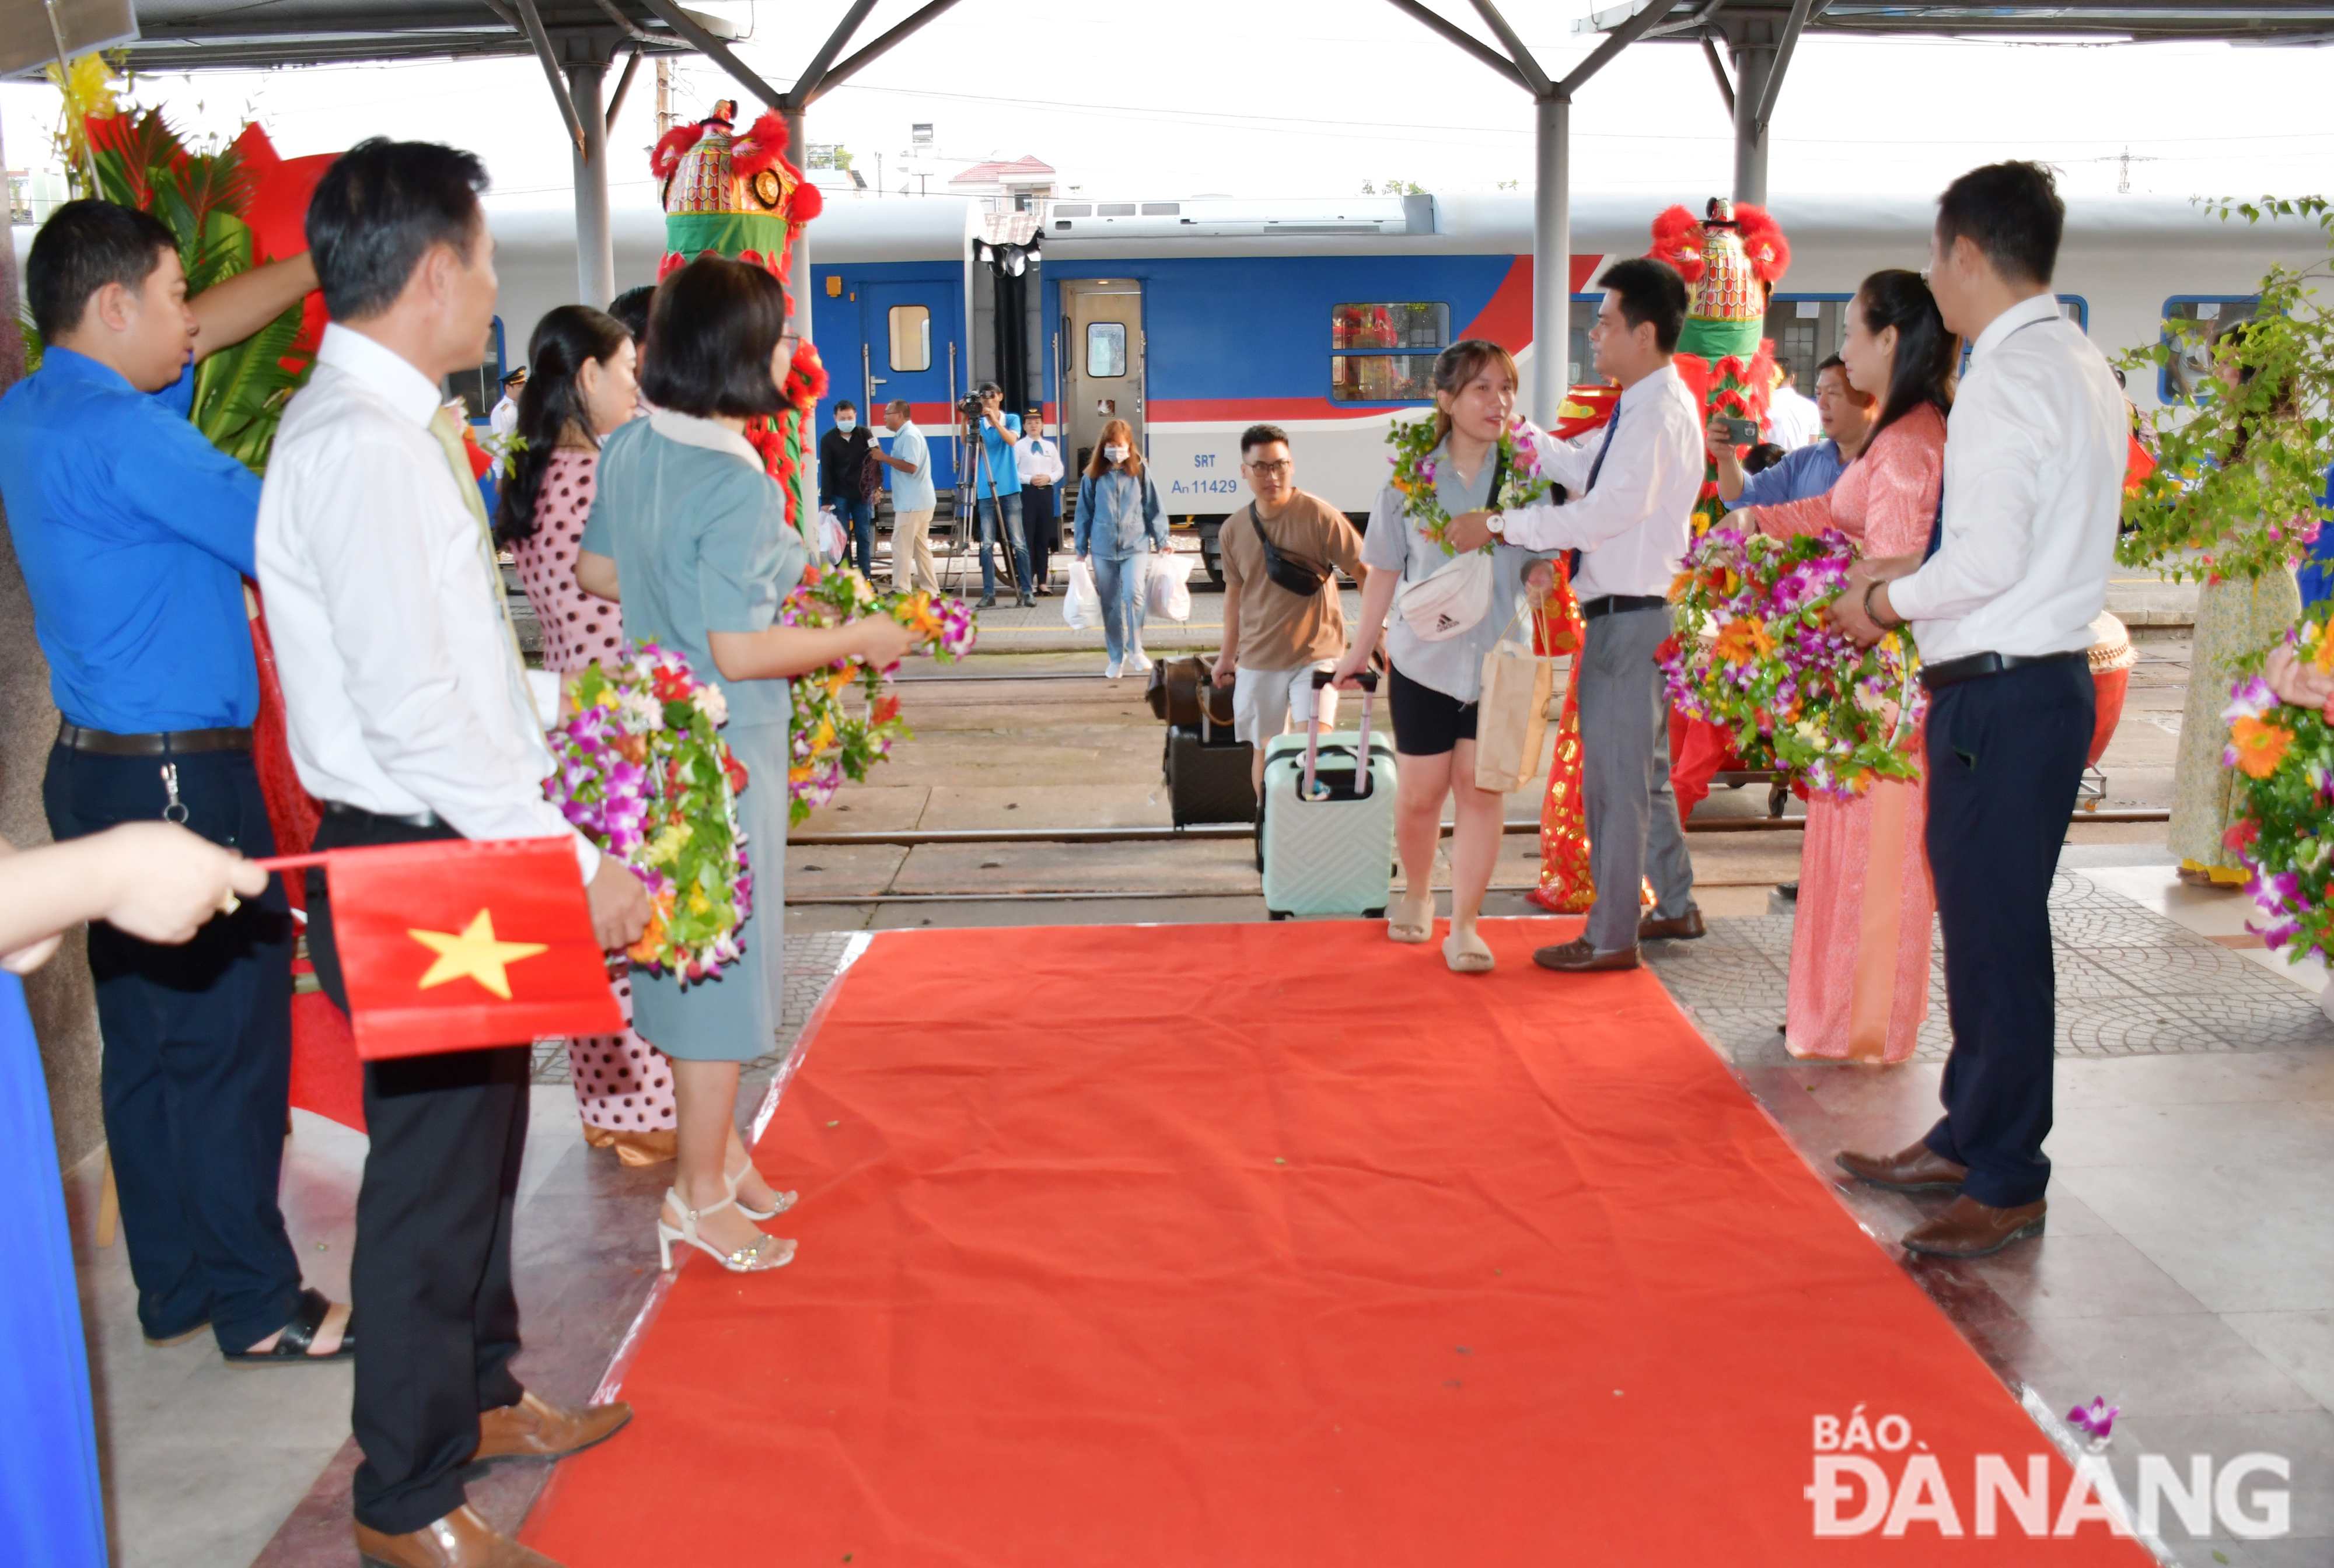 Lãnh đạo Chi nhánh vận tải Đường sắt Đà Nẵng, tặng hoa cho hành khách đi tàu. Ảnh: THÀNH LÂN